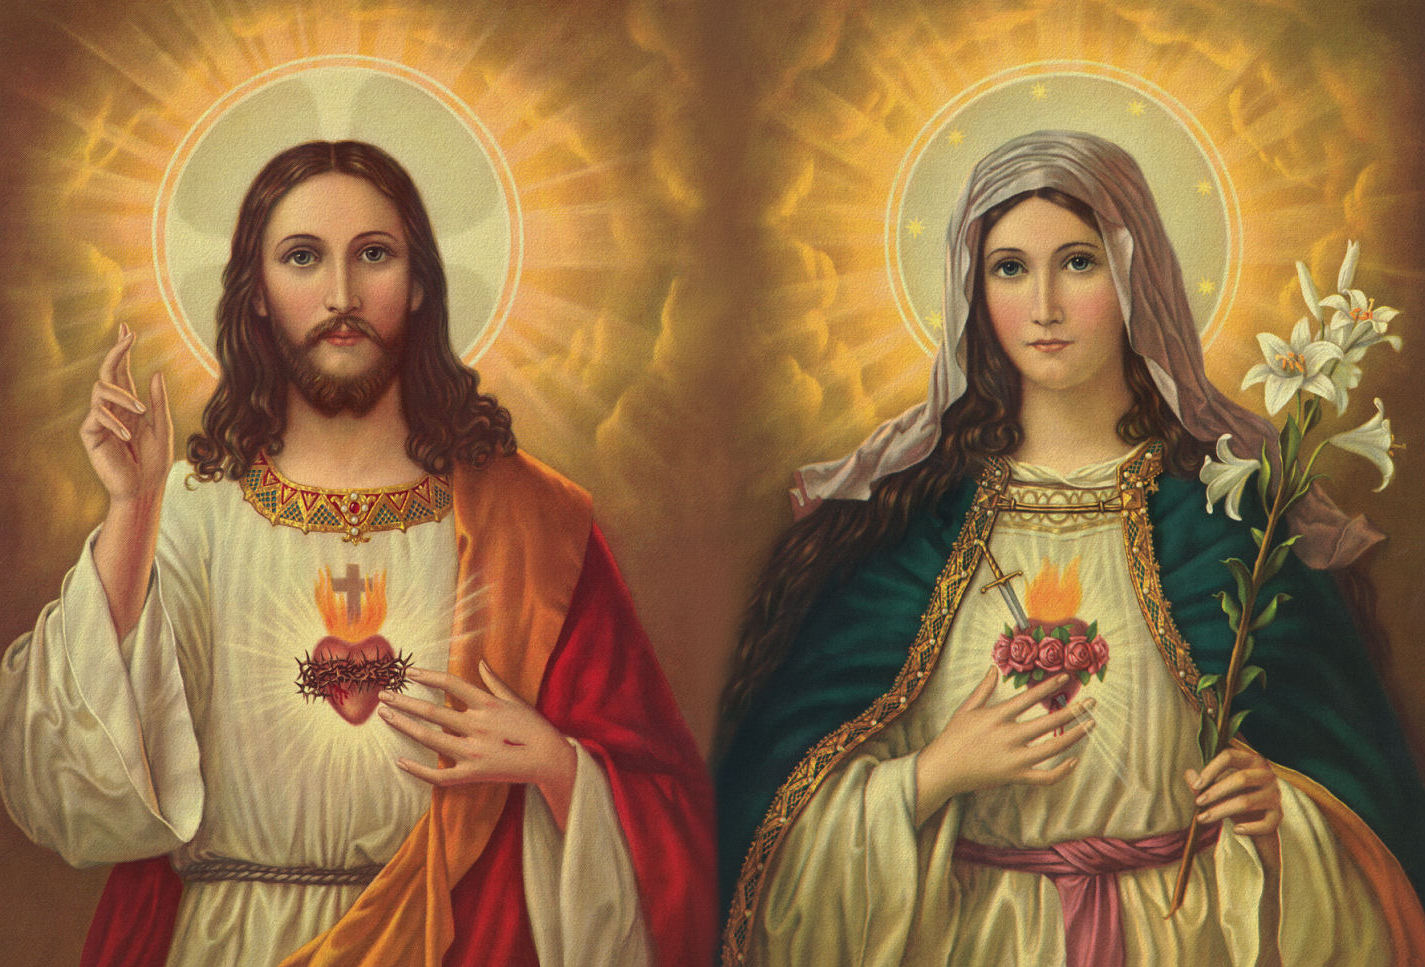 Jesús y María Aparecen para Enseñar la Oración que Soluciona hasta el Problema más Difícil